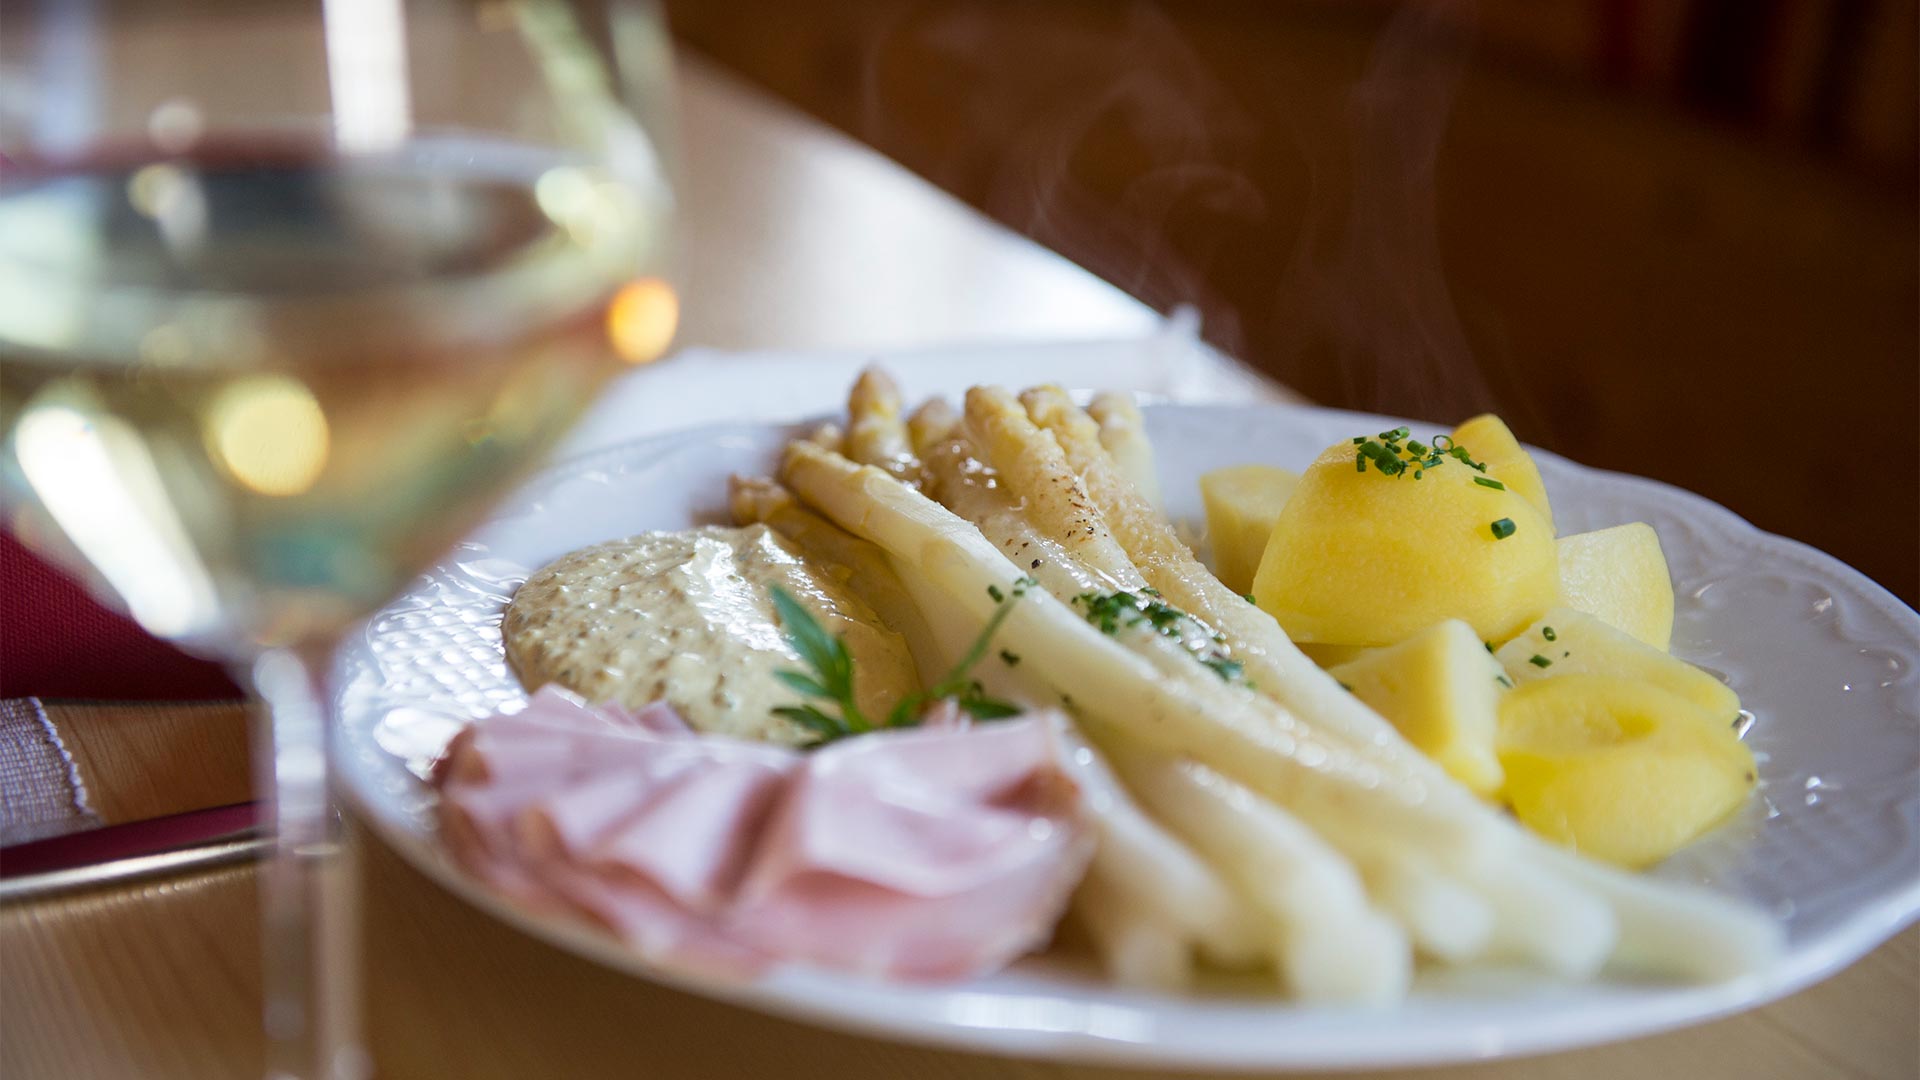 Piatto tipico della tradizione altoatesina a base di asparraggi cotti, patate lesse e prosciutto cotto servito con un calice di vino bianco.